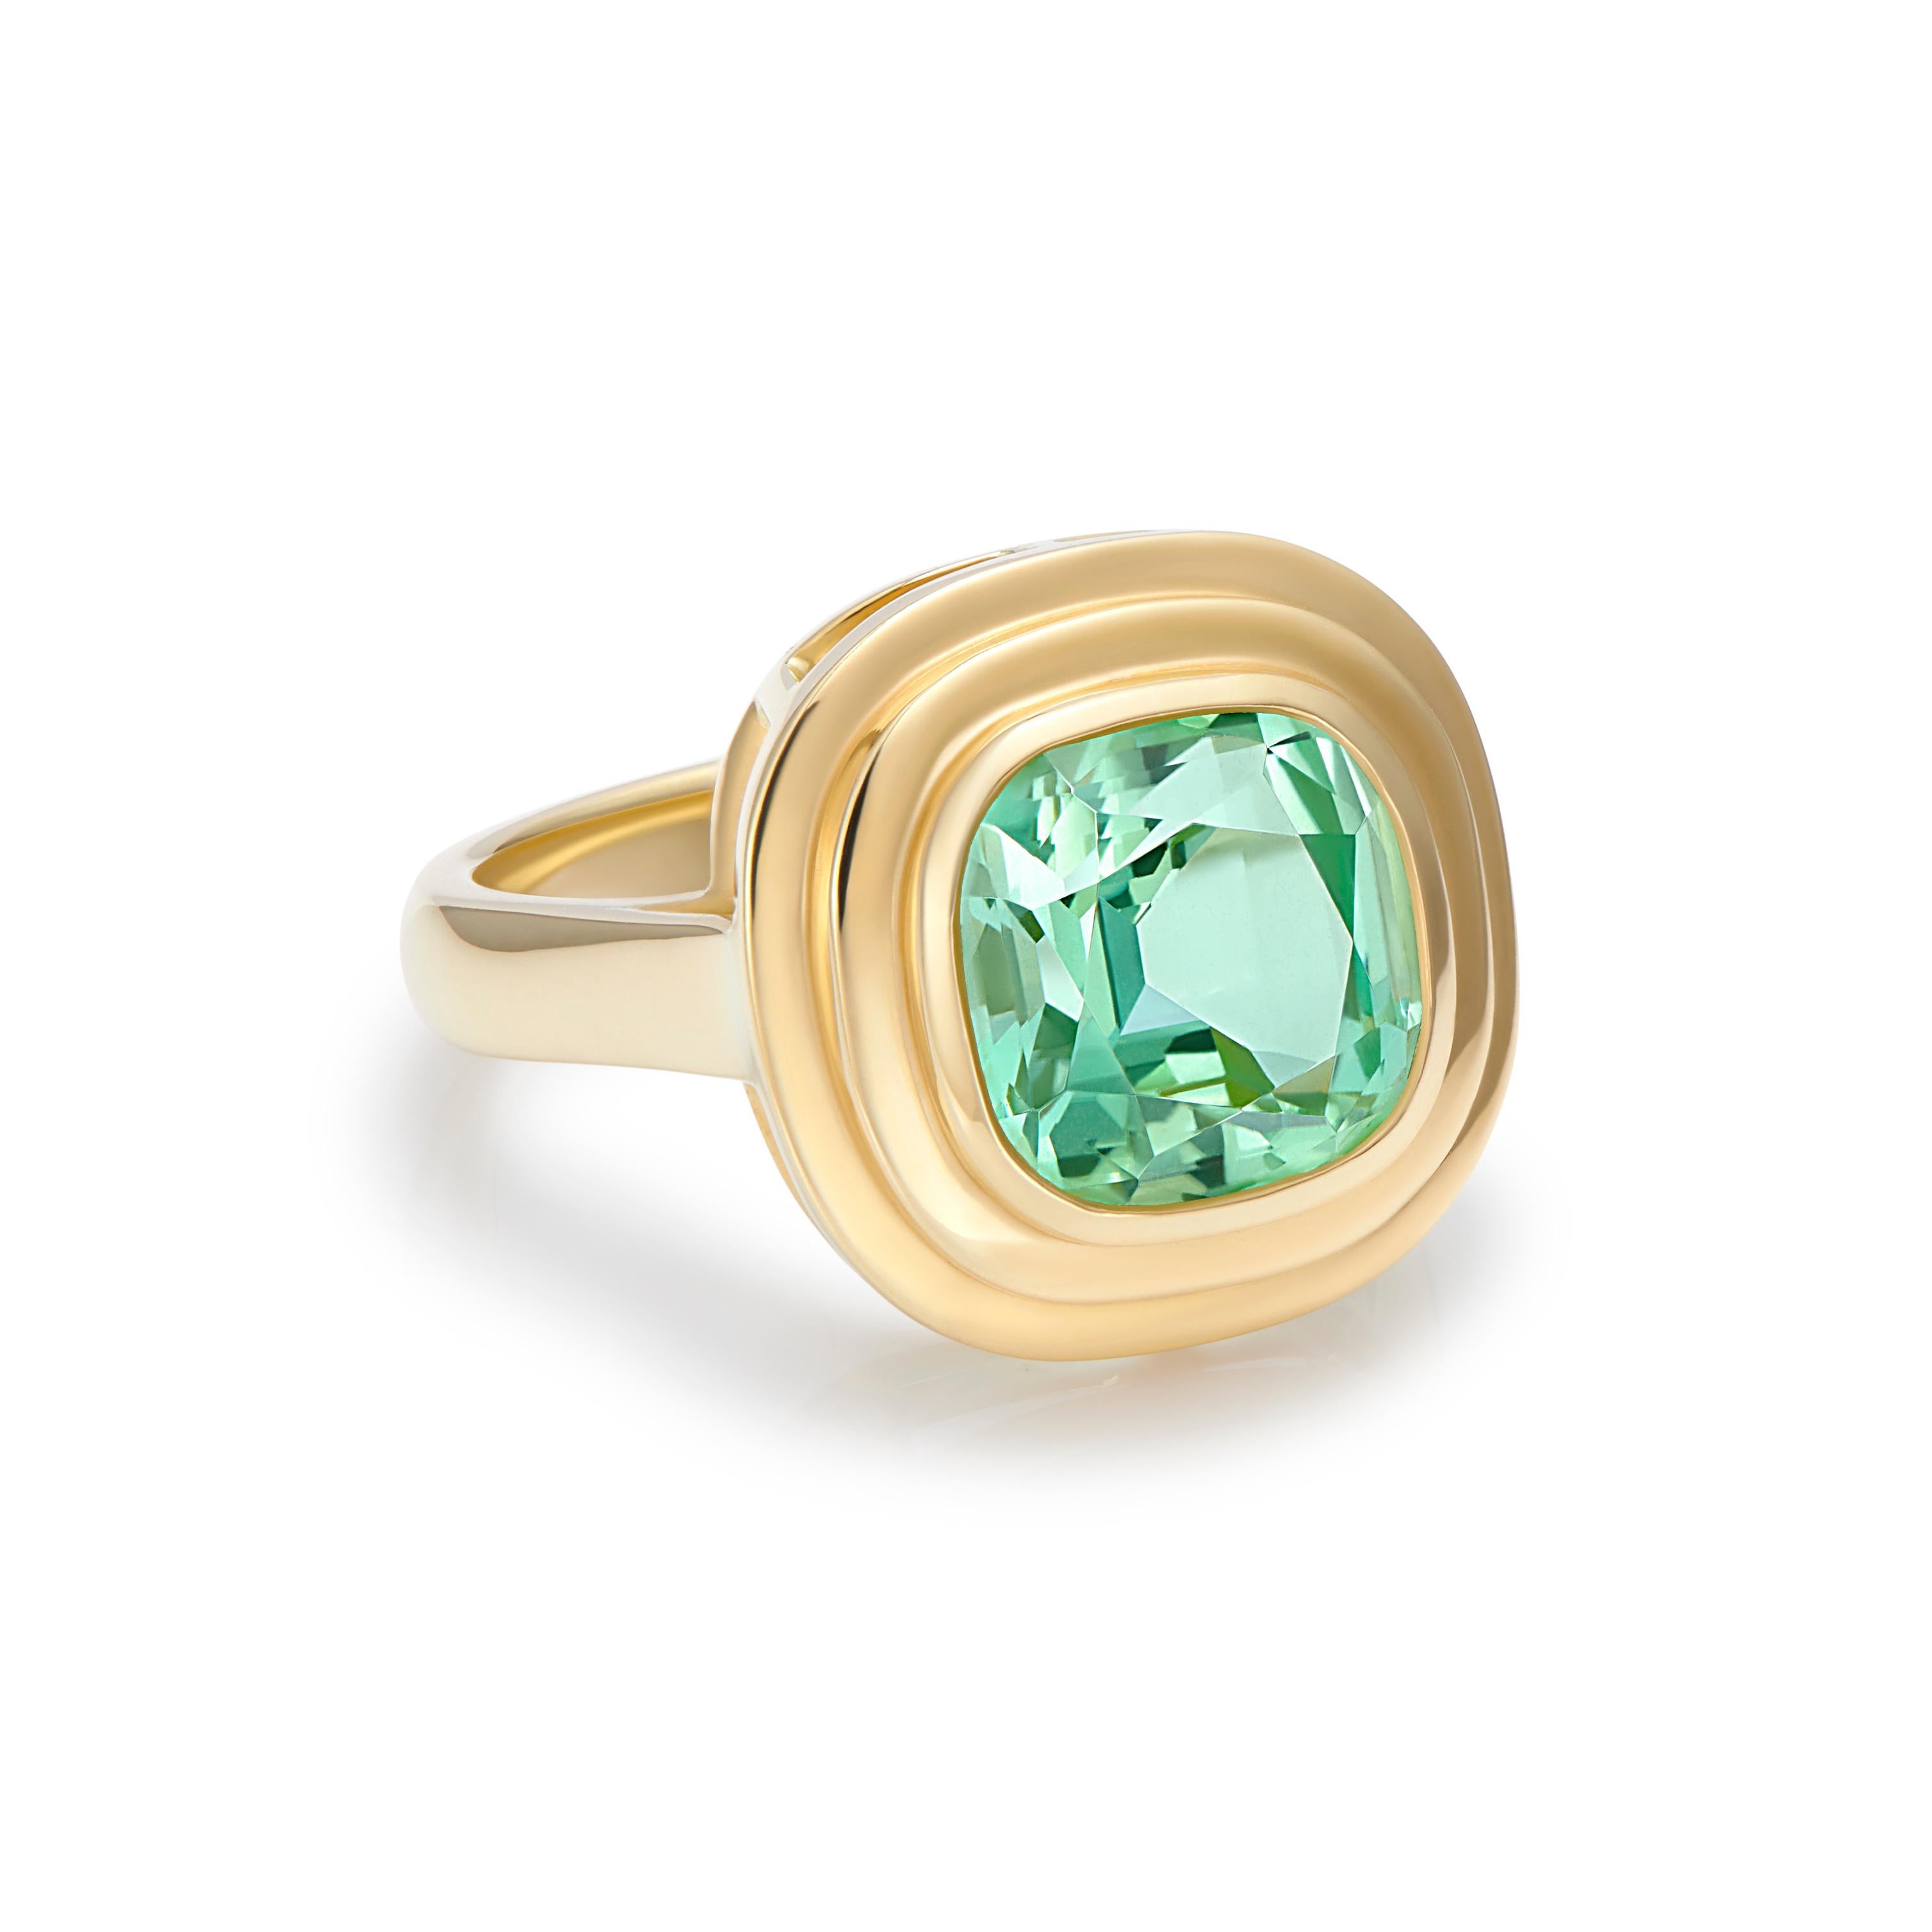 Ein atemberaubender blau/grüner Turmalin, eingefasst in 18 Karat Gelbgold, Ring Athena. 
Turmalin gibt es in einer Vielzahl von Farben, wobei Grün die beliebteste ist, und dieser wunderschöne Stein ist ein echter Blickfang. 

Der Turmalin ist der